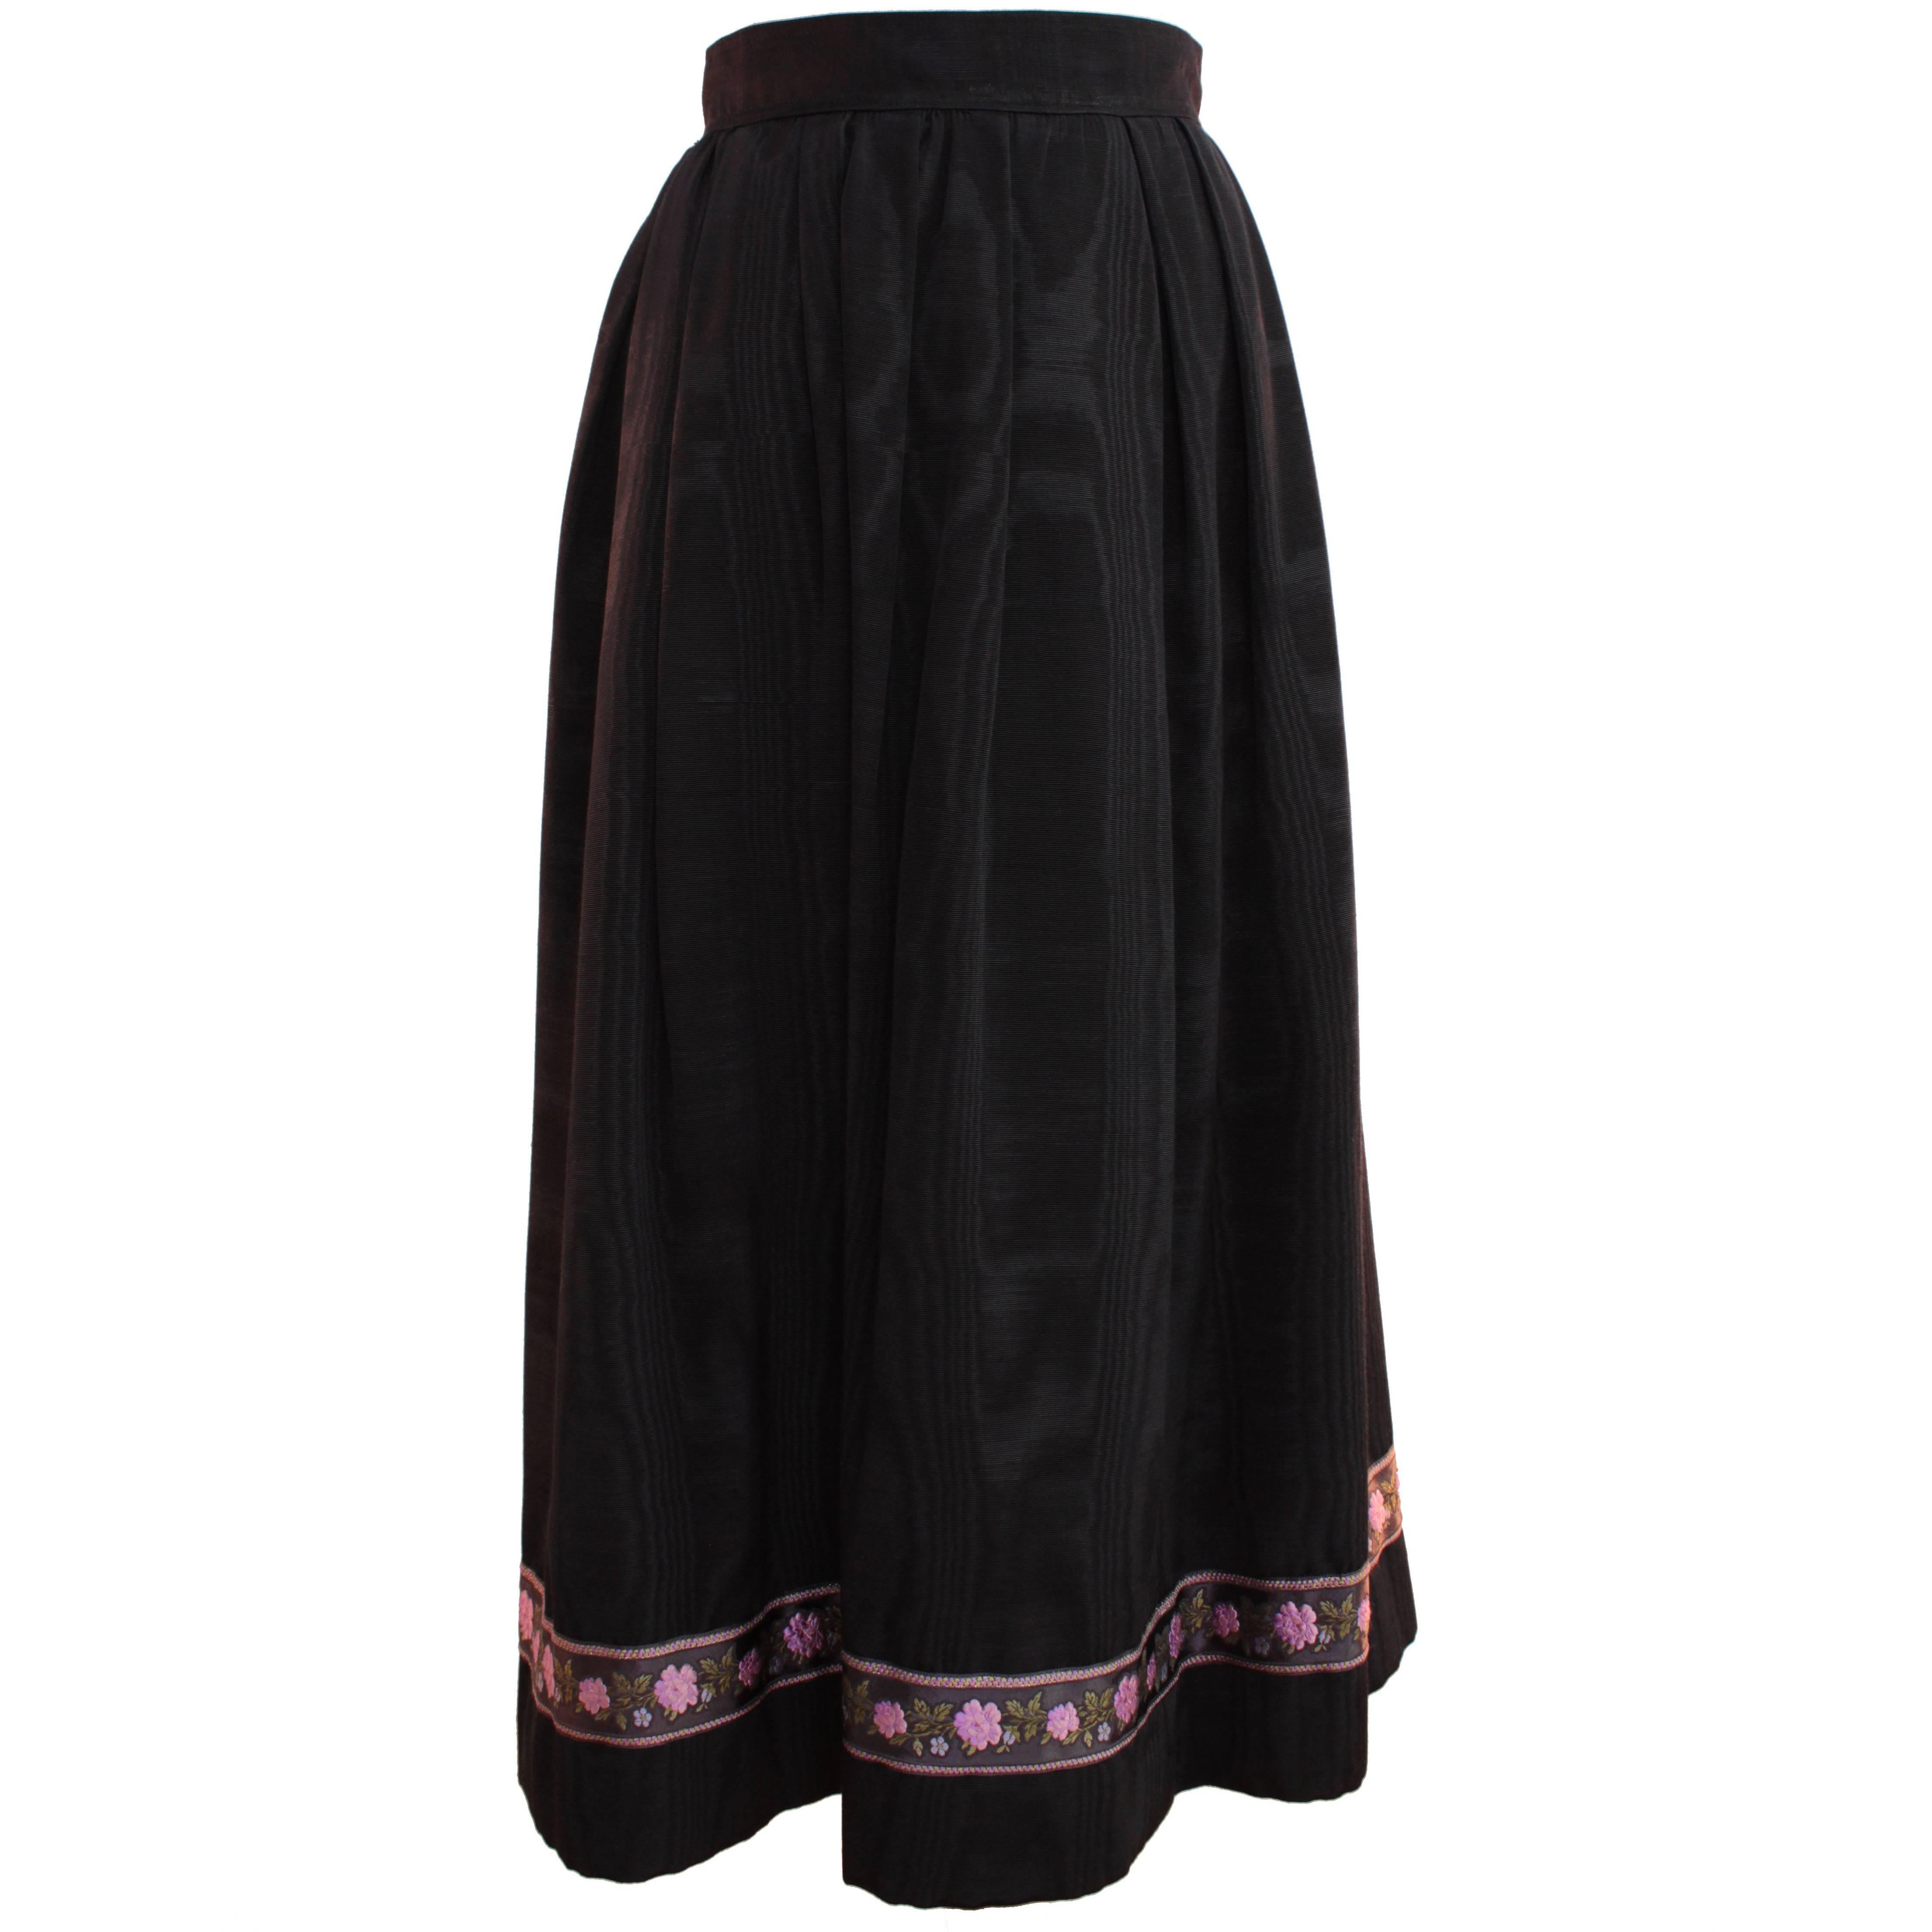 Yves Saint Laurent Silk Skirt Black Moire Embroidered Hem Russian Peasant 70s